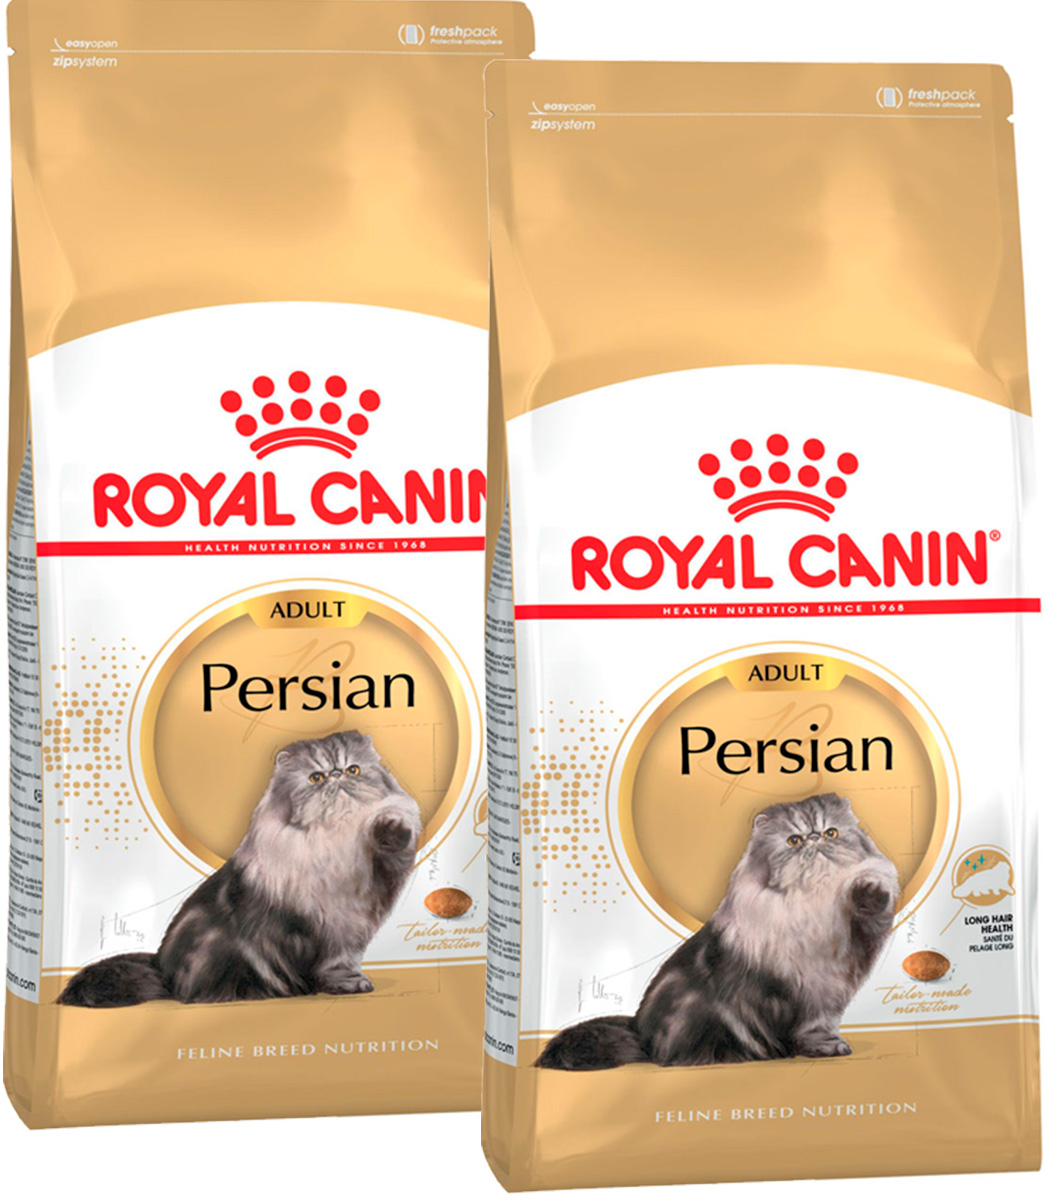 фото Сухой корм для кошек royal canin для персидских кошек 2 шт по 4 кг